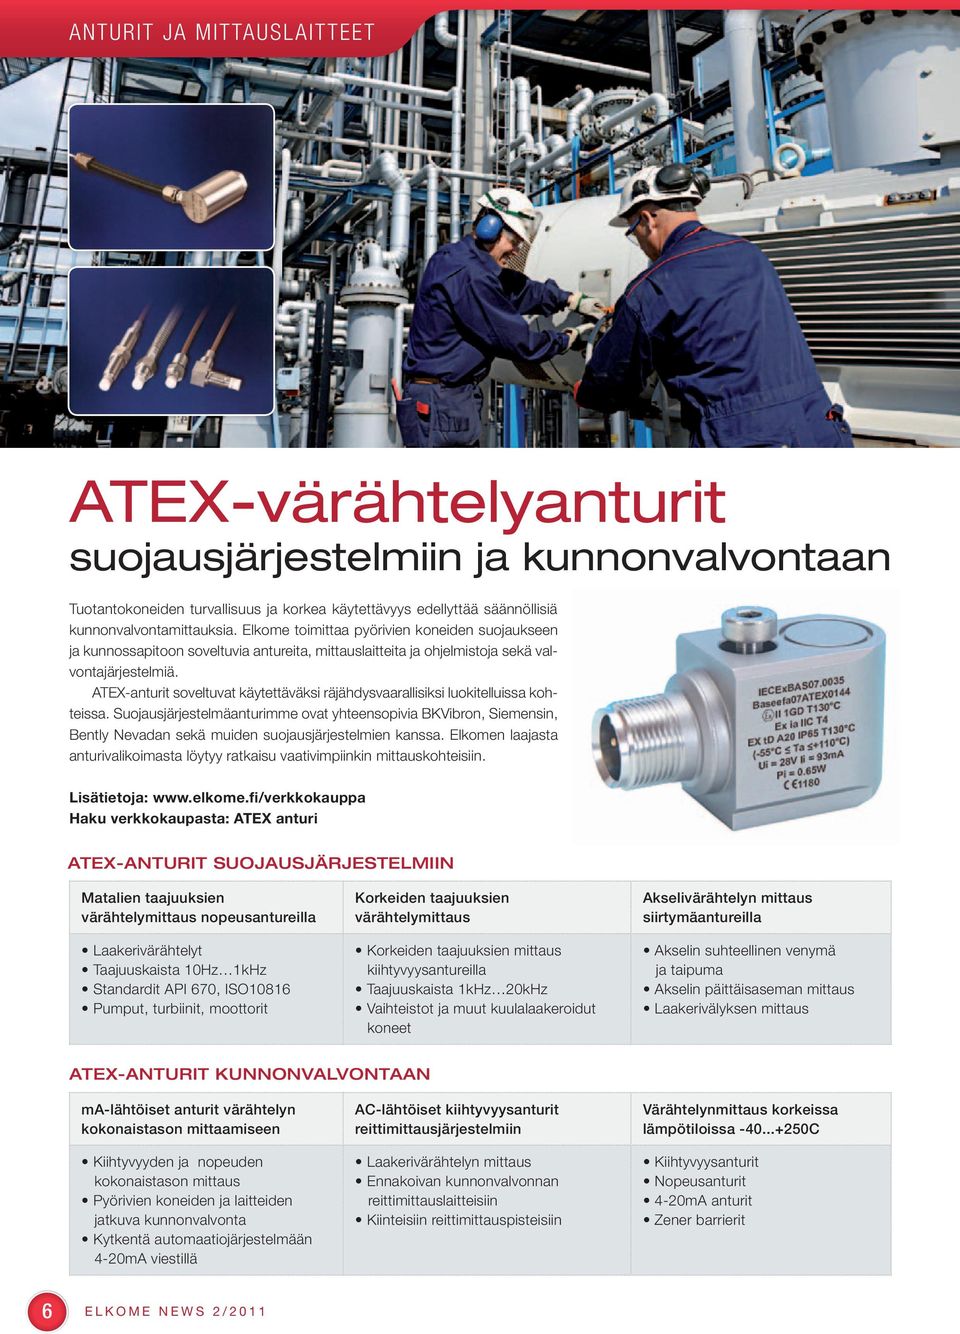 ATEX-anturit soveltuvat käytettäväksi räjähdysvaarallisiksi luokitelluissa kohteissa.